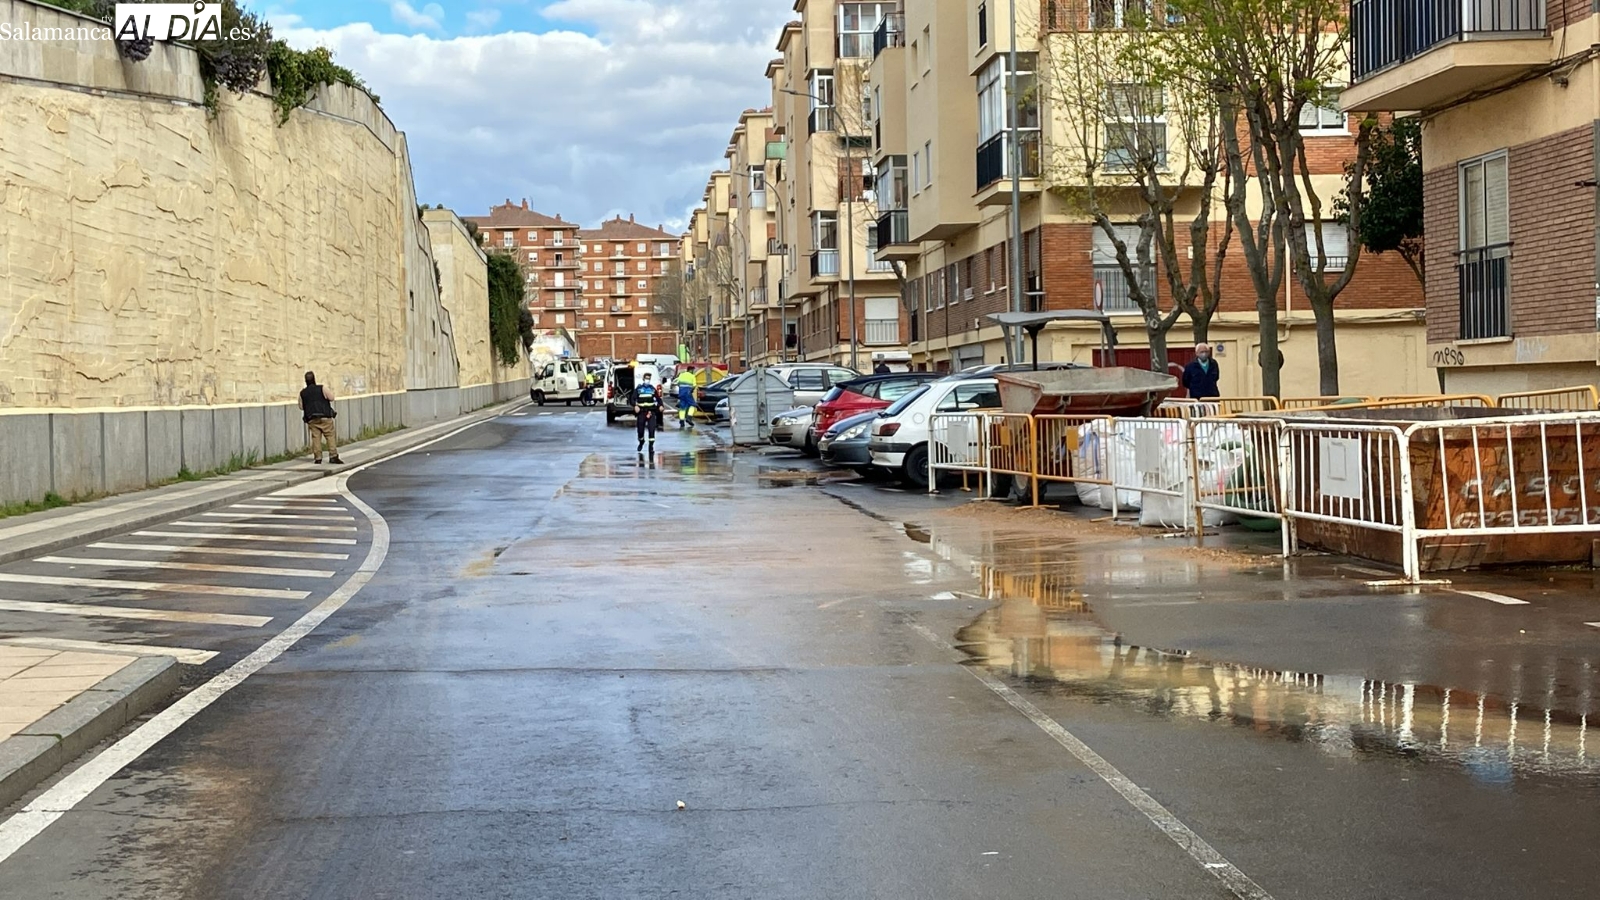 Foto 2 - El reventón de una tubería en la calle Linares obliga a cortar el tráfico y retirar un vehículo